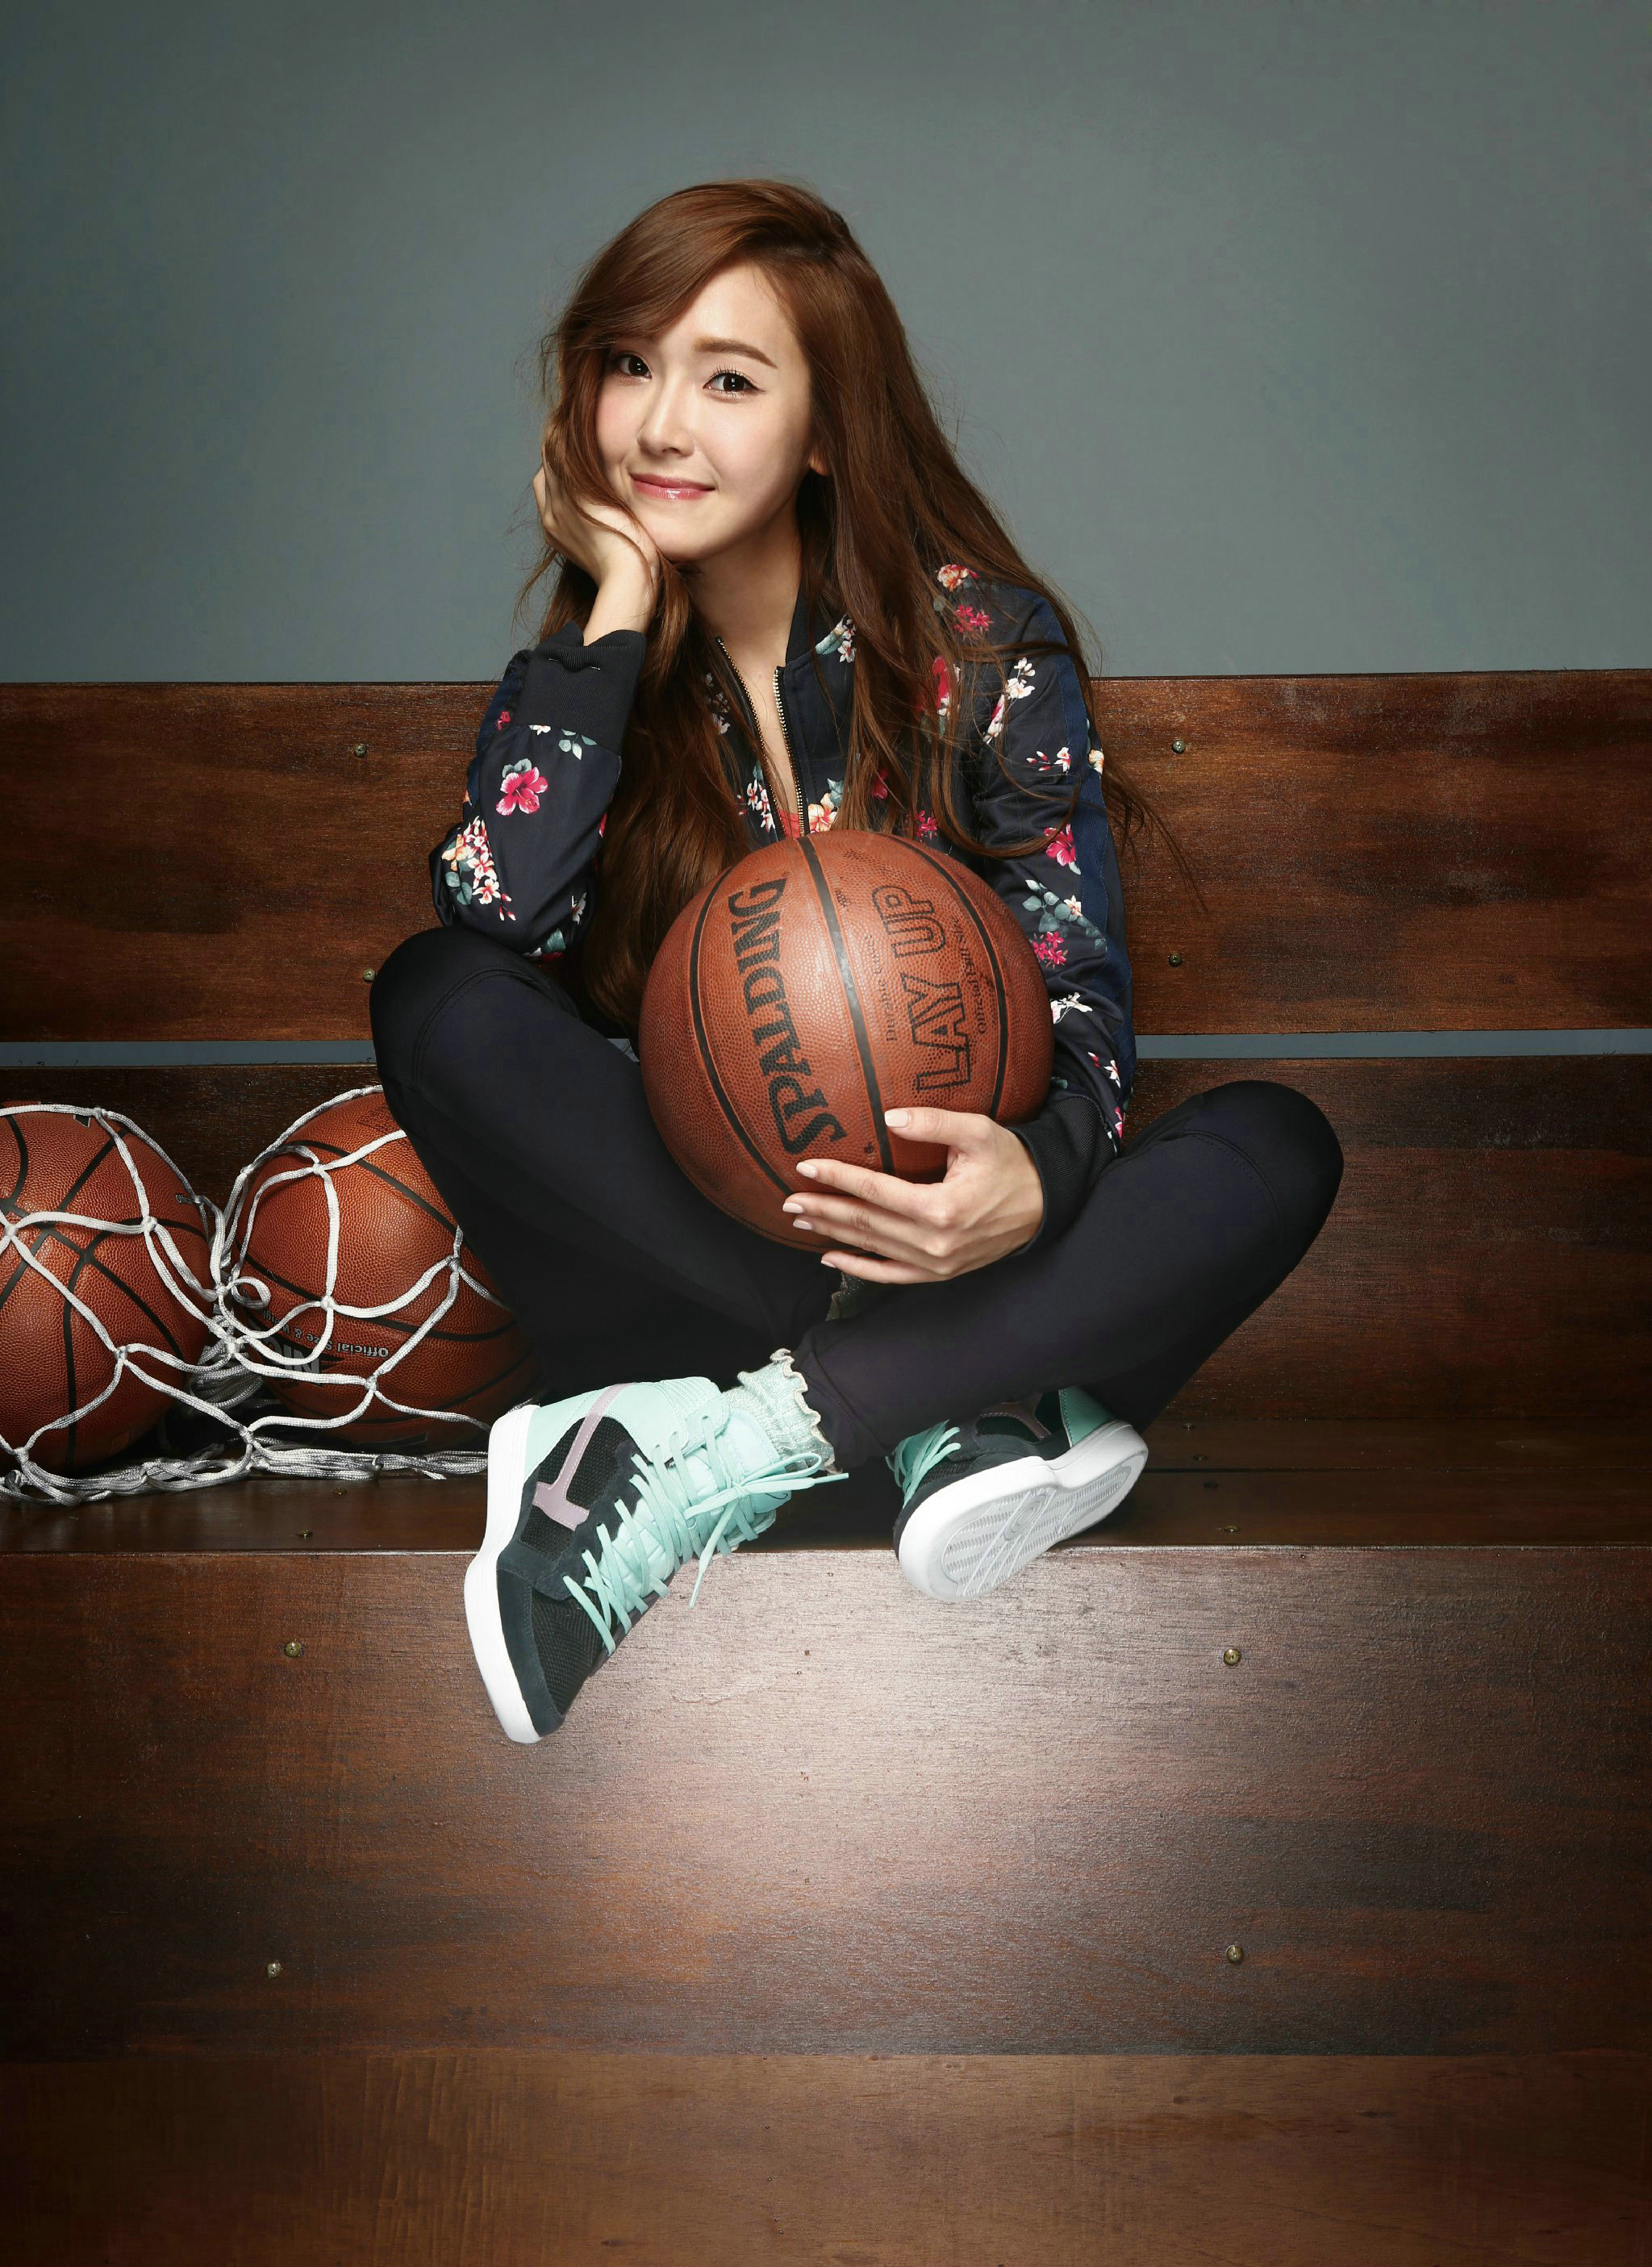 제시카 LI-NING(중국 스포츠브랜드) 광고모델 화보.jpg